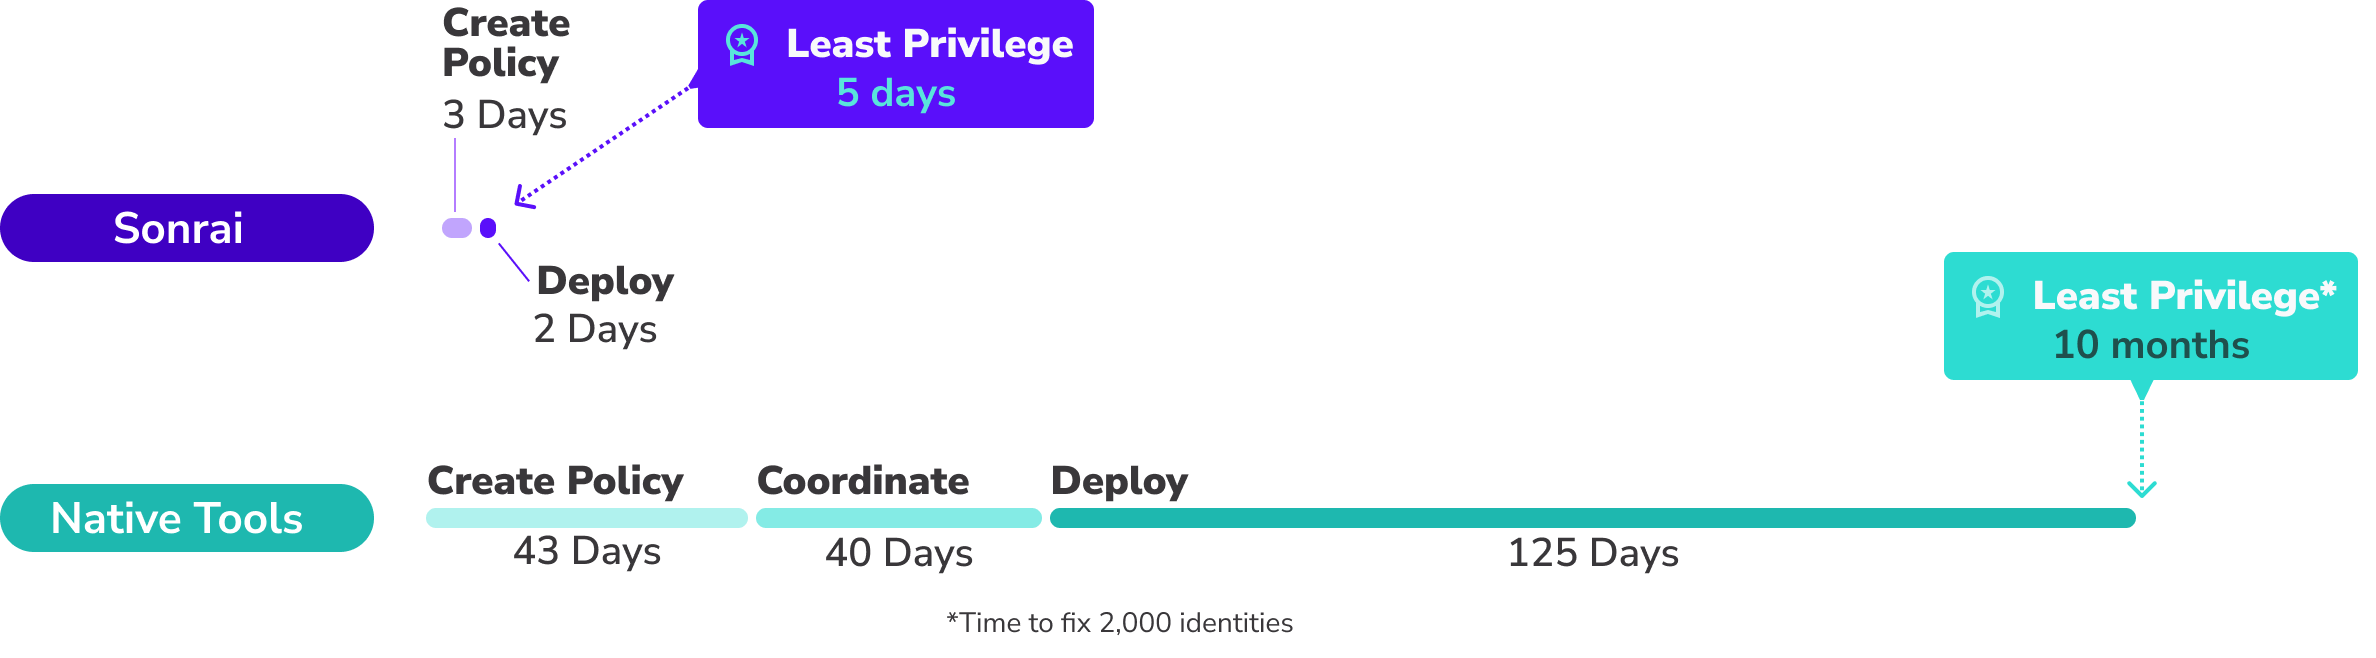 Achieve Least Privilege in 5 Days